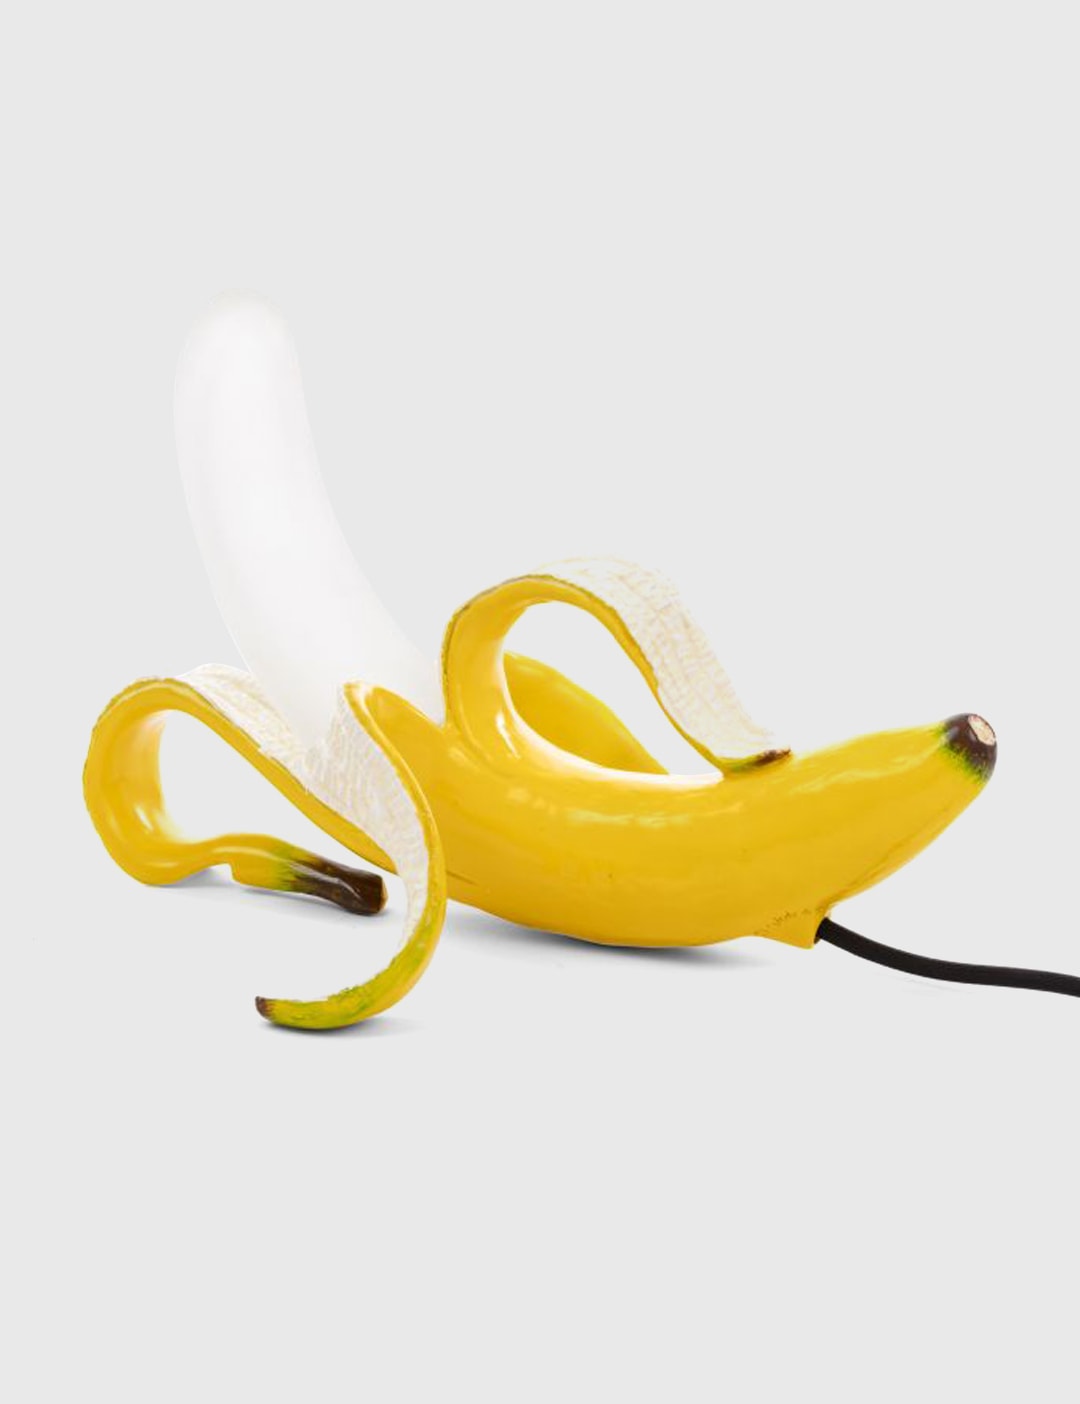 바나나 램프 옐로우 휴이 Placeholder Image